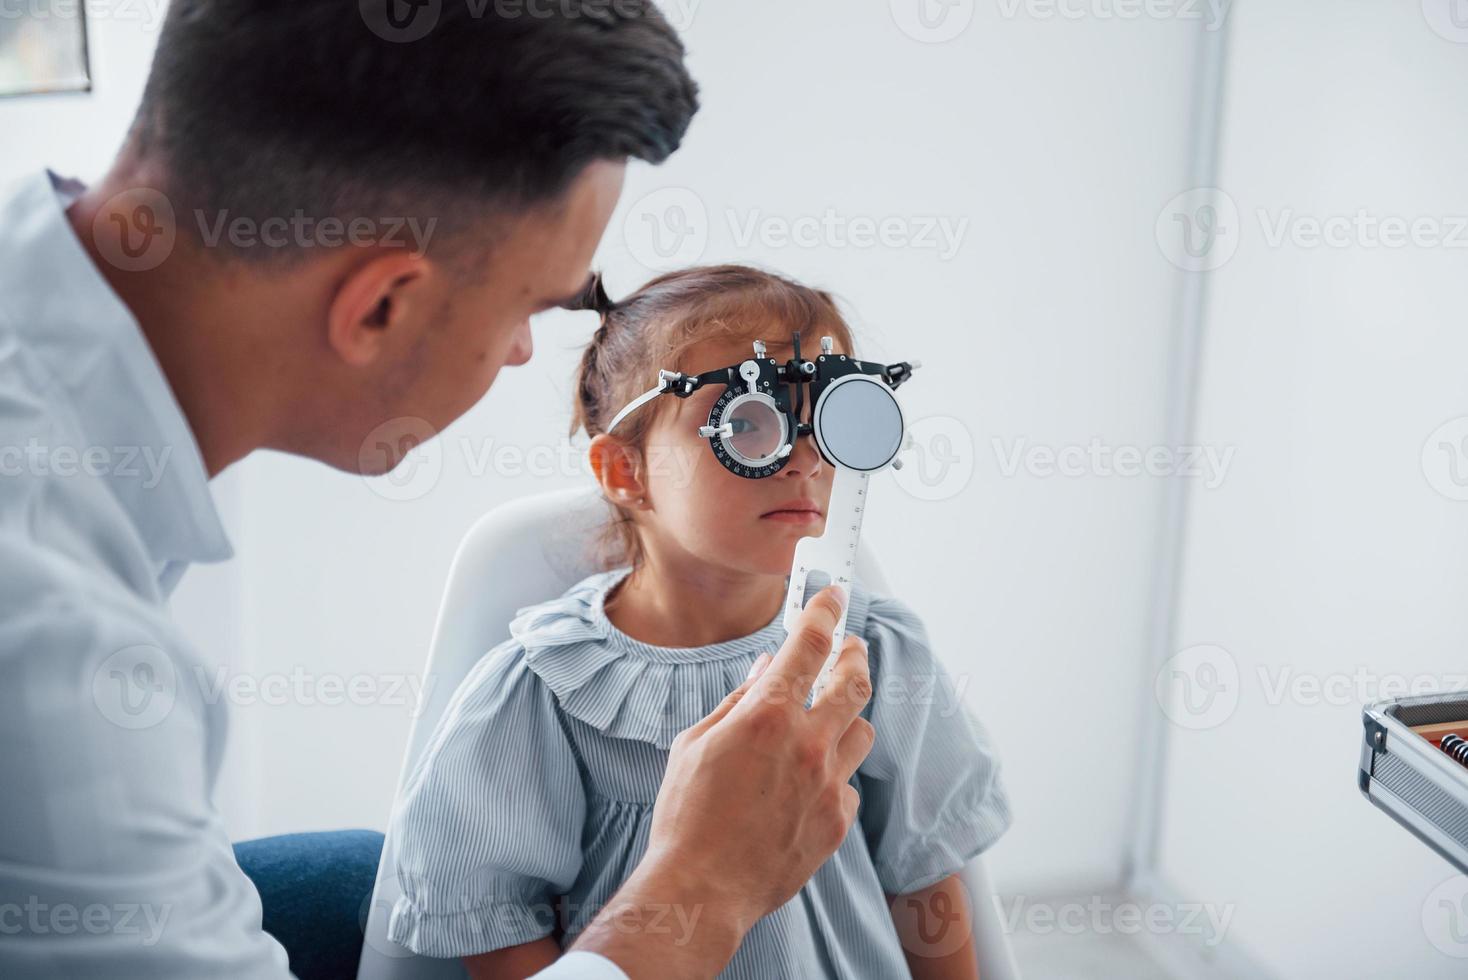 probando la visión. joven oftalmólogo está con una pequeña visitante en la clínica foto